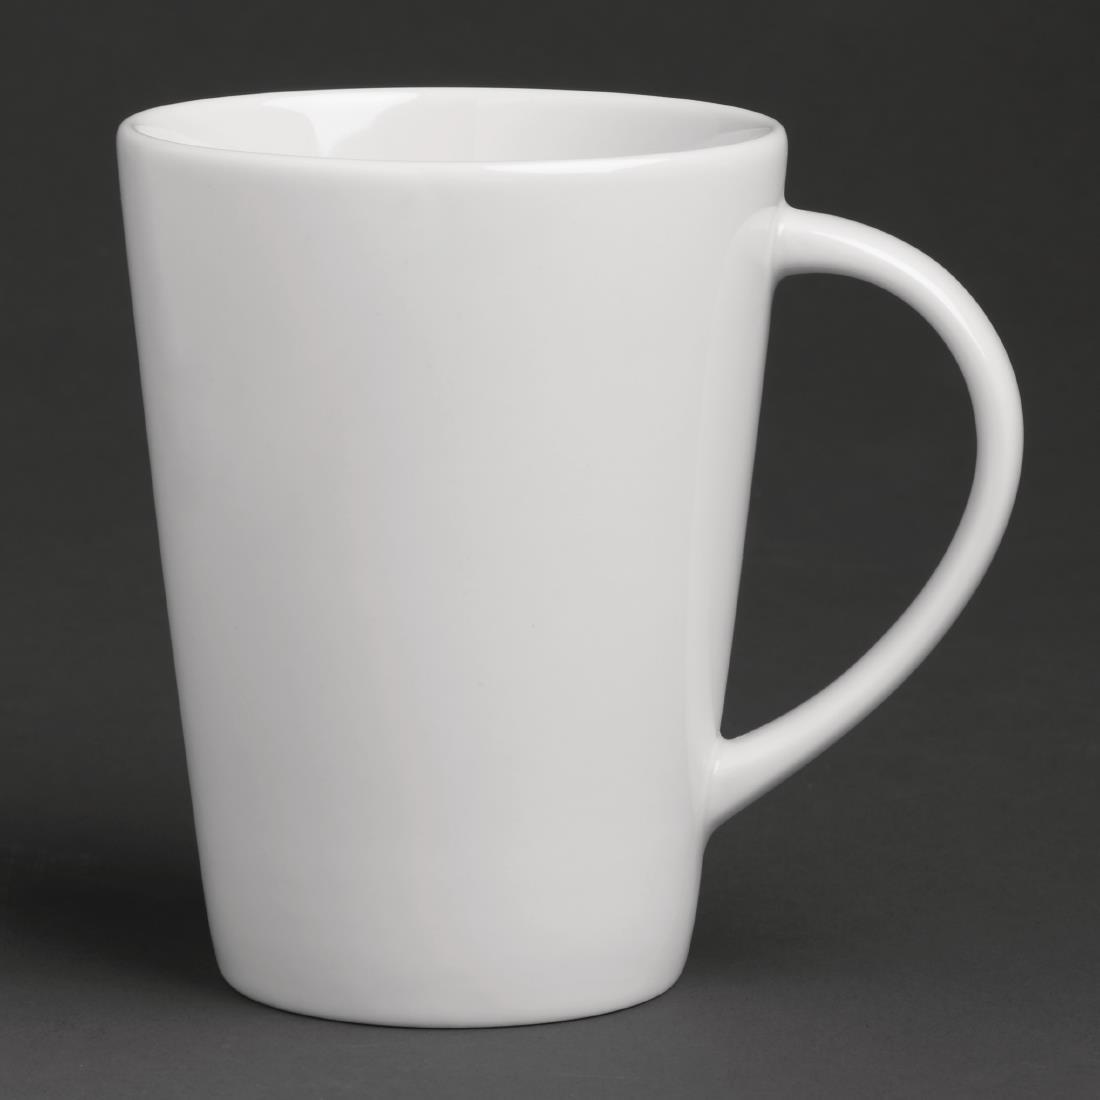 Royal Porcelain Classic White Mug 275ml (Pack of 6) - GT933  - 1